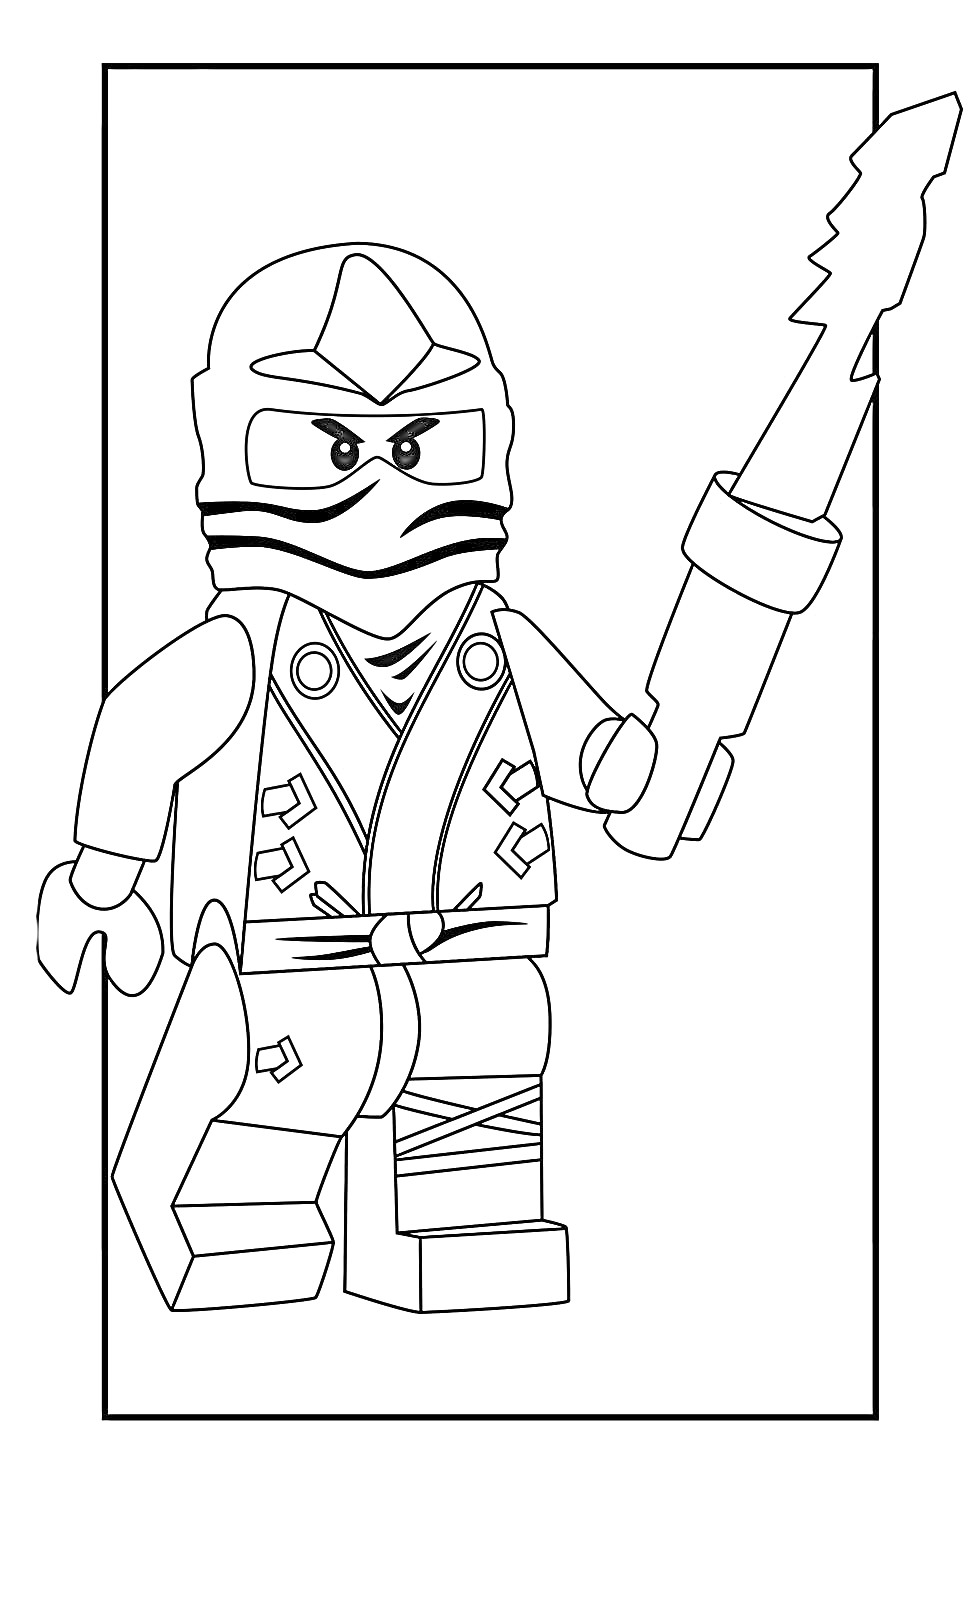 Раскраска Лего Ниндзя Го персонаж с огненным мечом в позе атаки